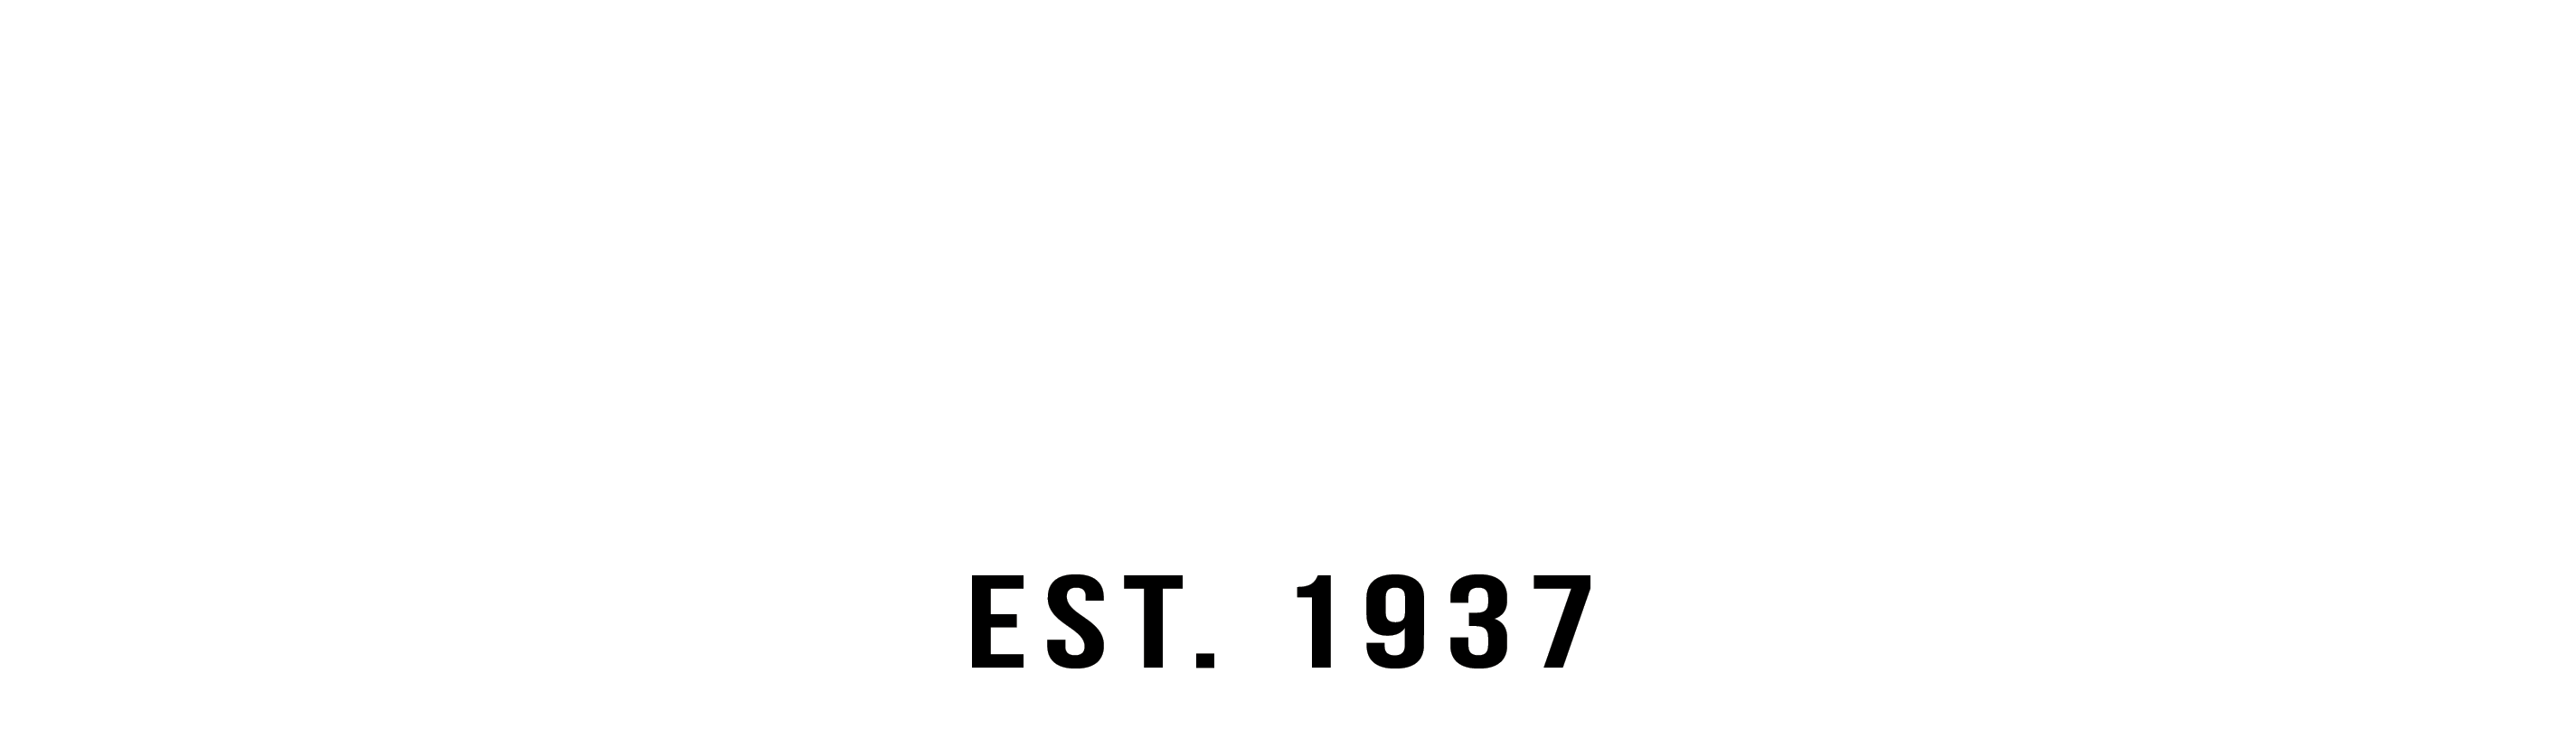 Lankford's Energy Corridor logo top